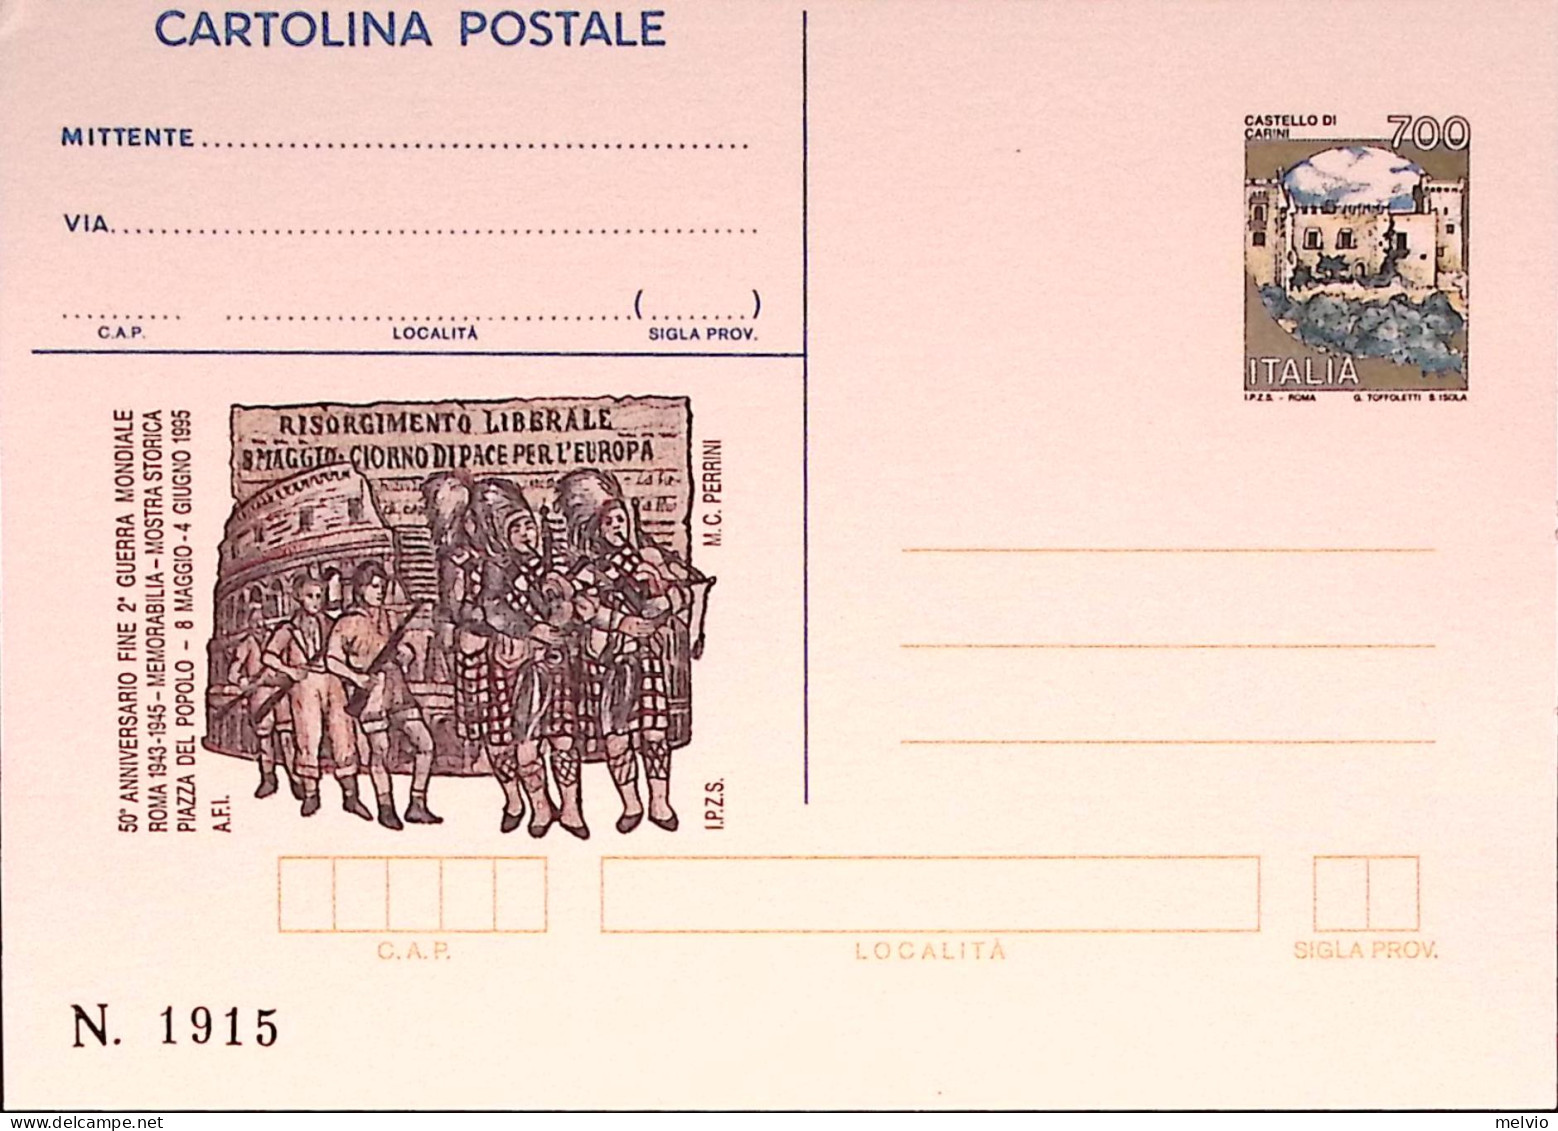 1995-FINE 2 G.M. Cartolina Postale IPZS Lire 700 Nuova - Interi Postali